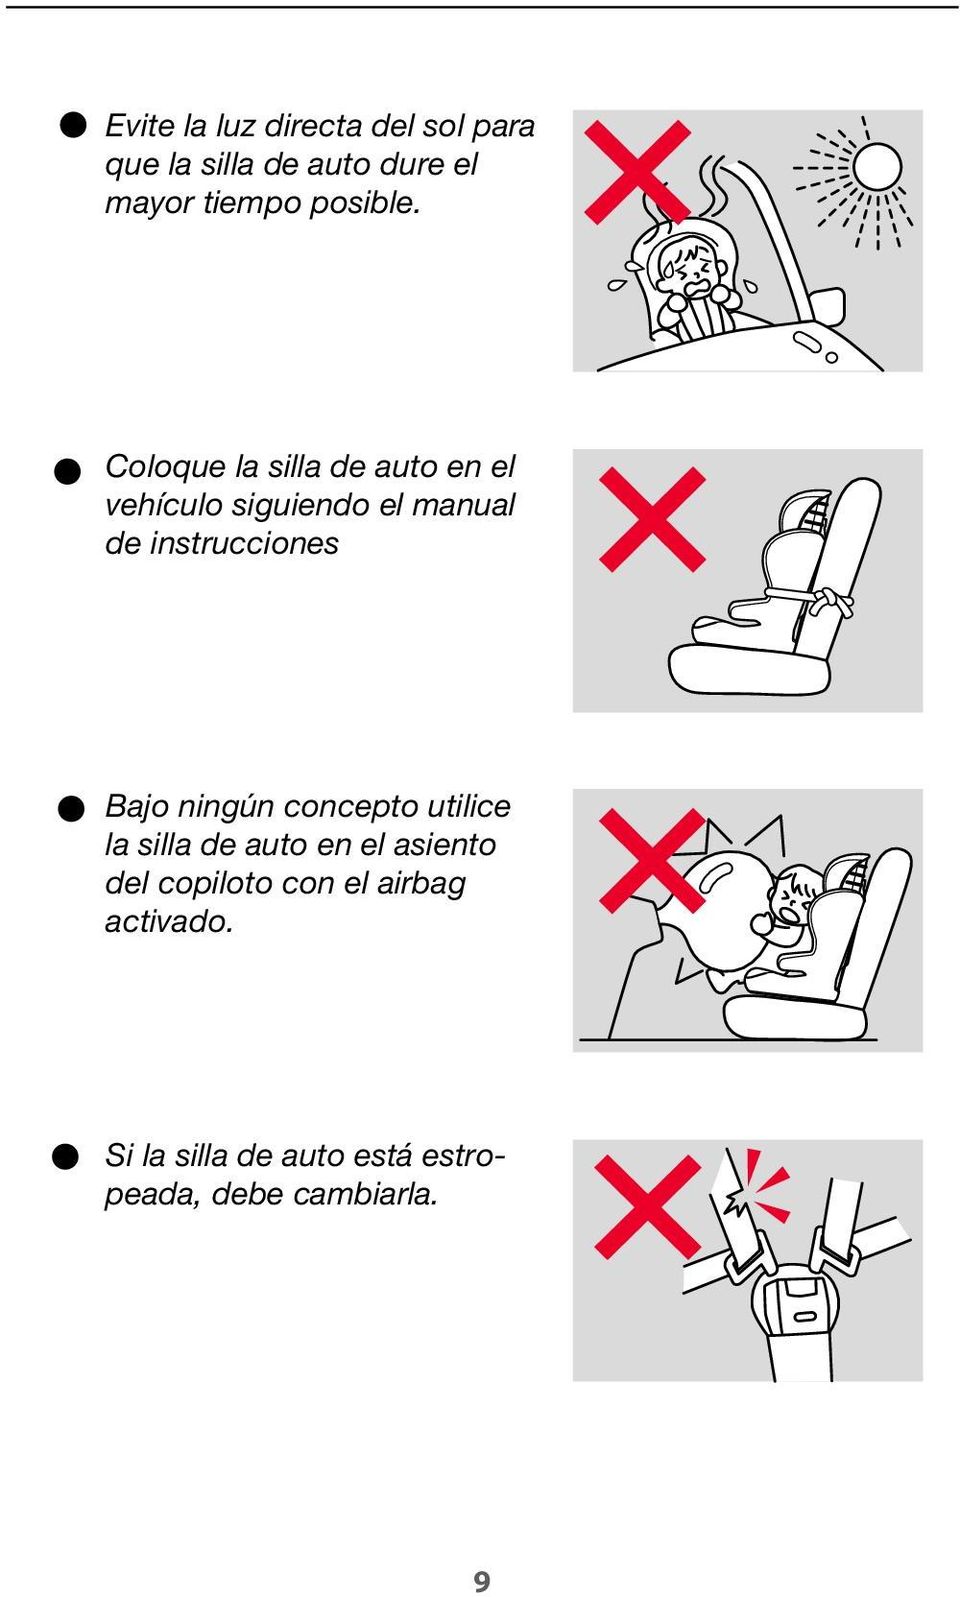 Coloque la silla de auto en el vehículo siguiendo el manual de instrucciones